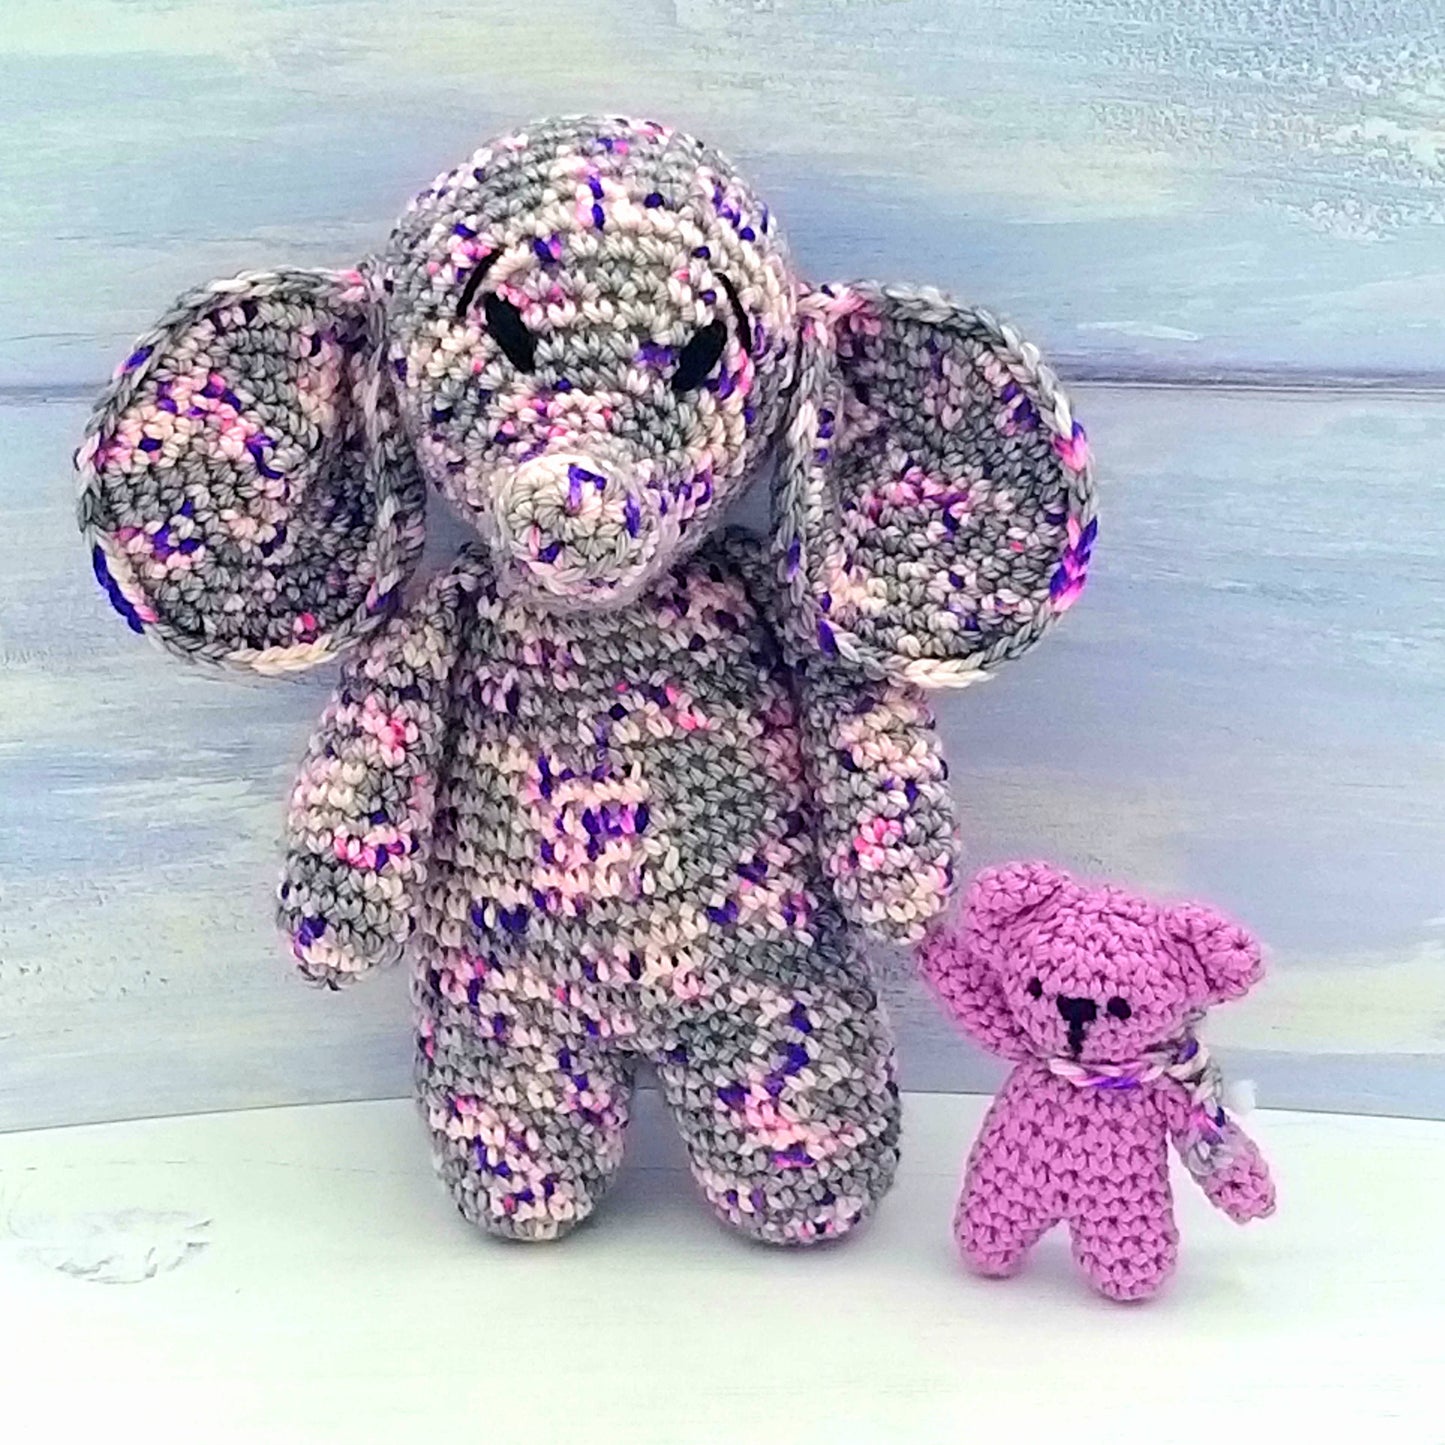 Elephant and baby teddy bear crochet toys